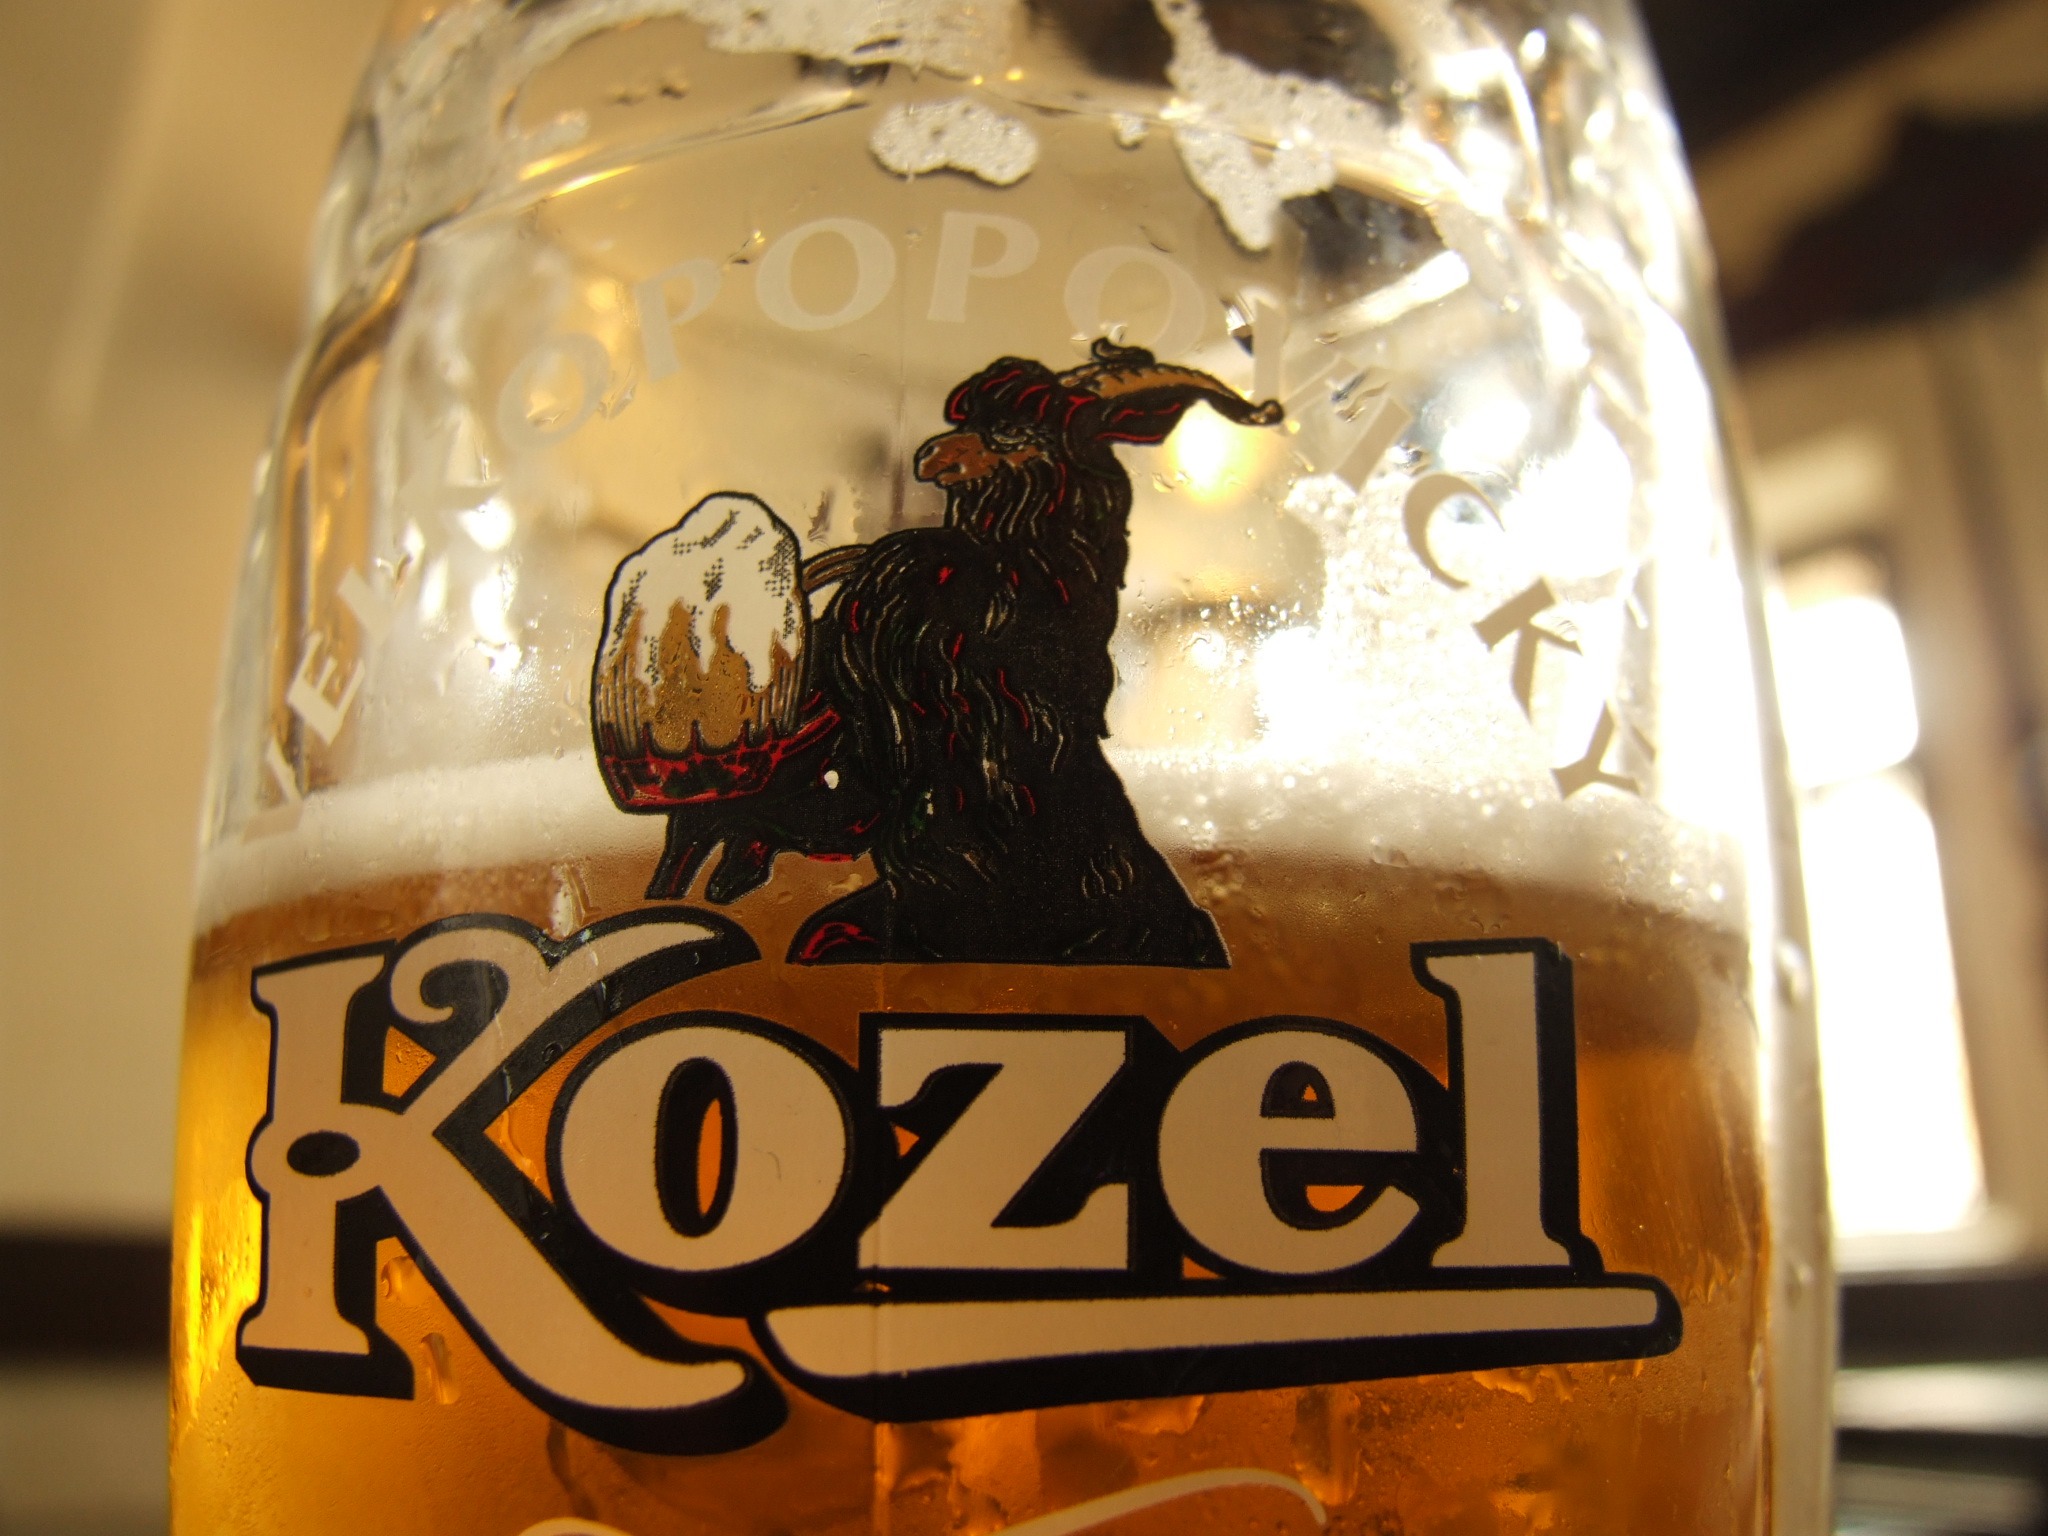 Пиво Velkopopovicky Kozel